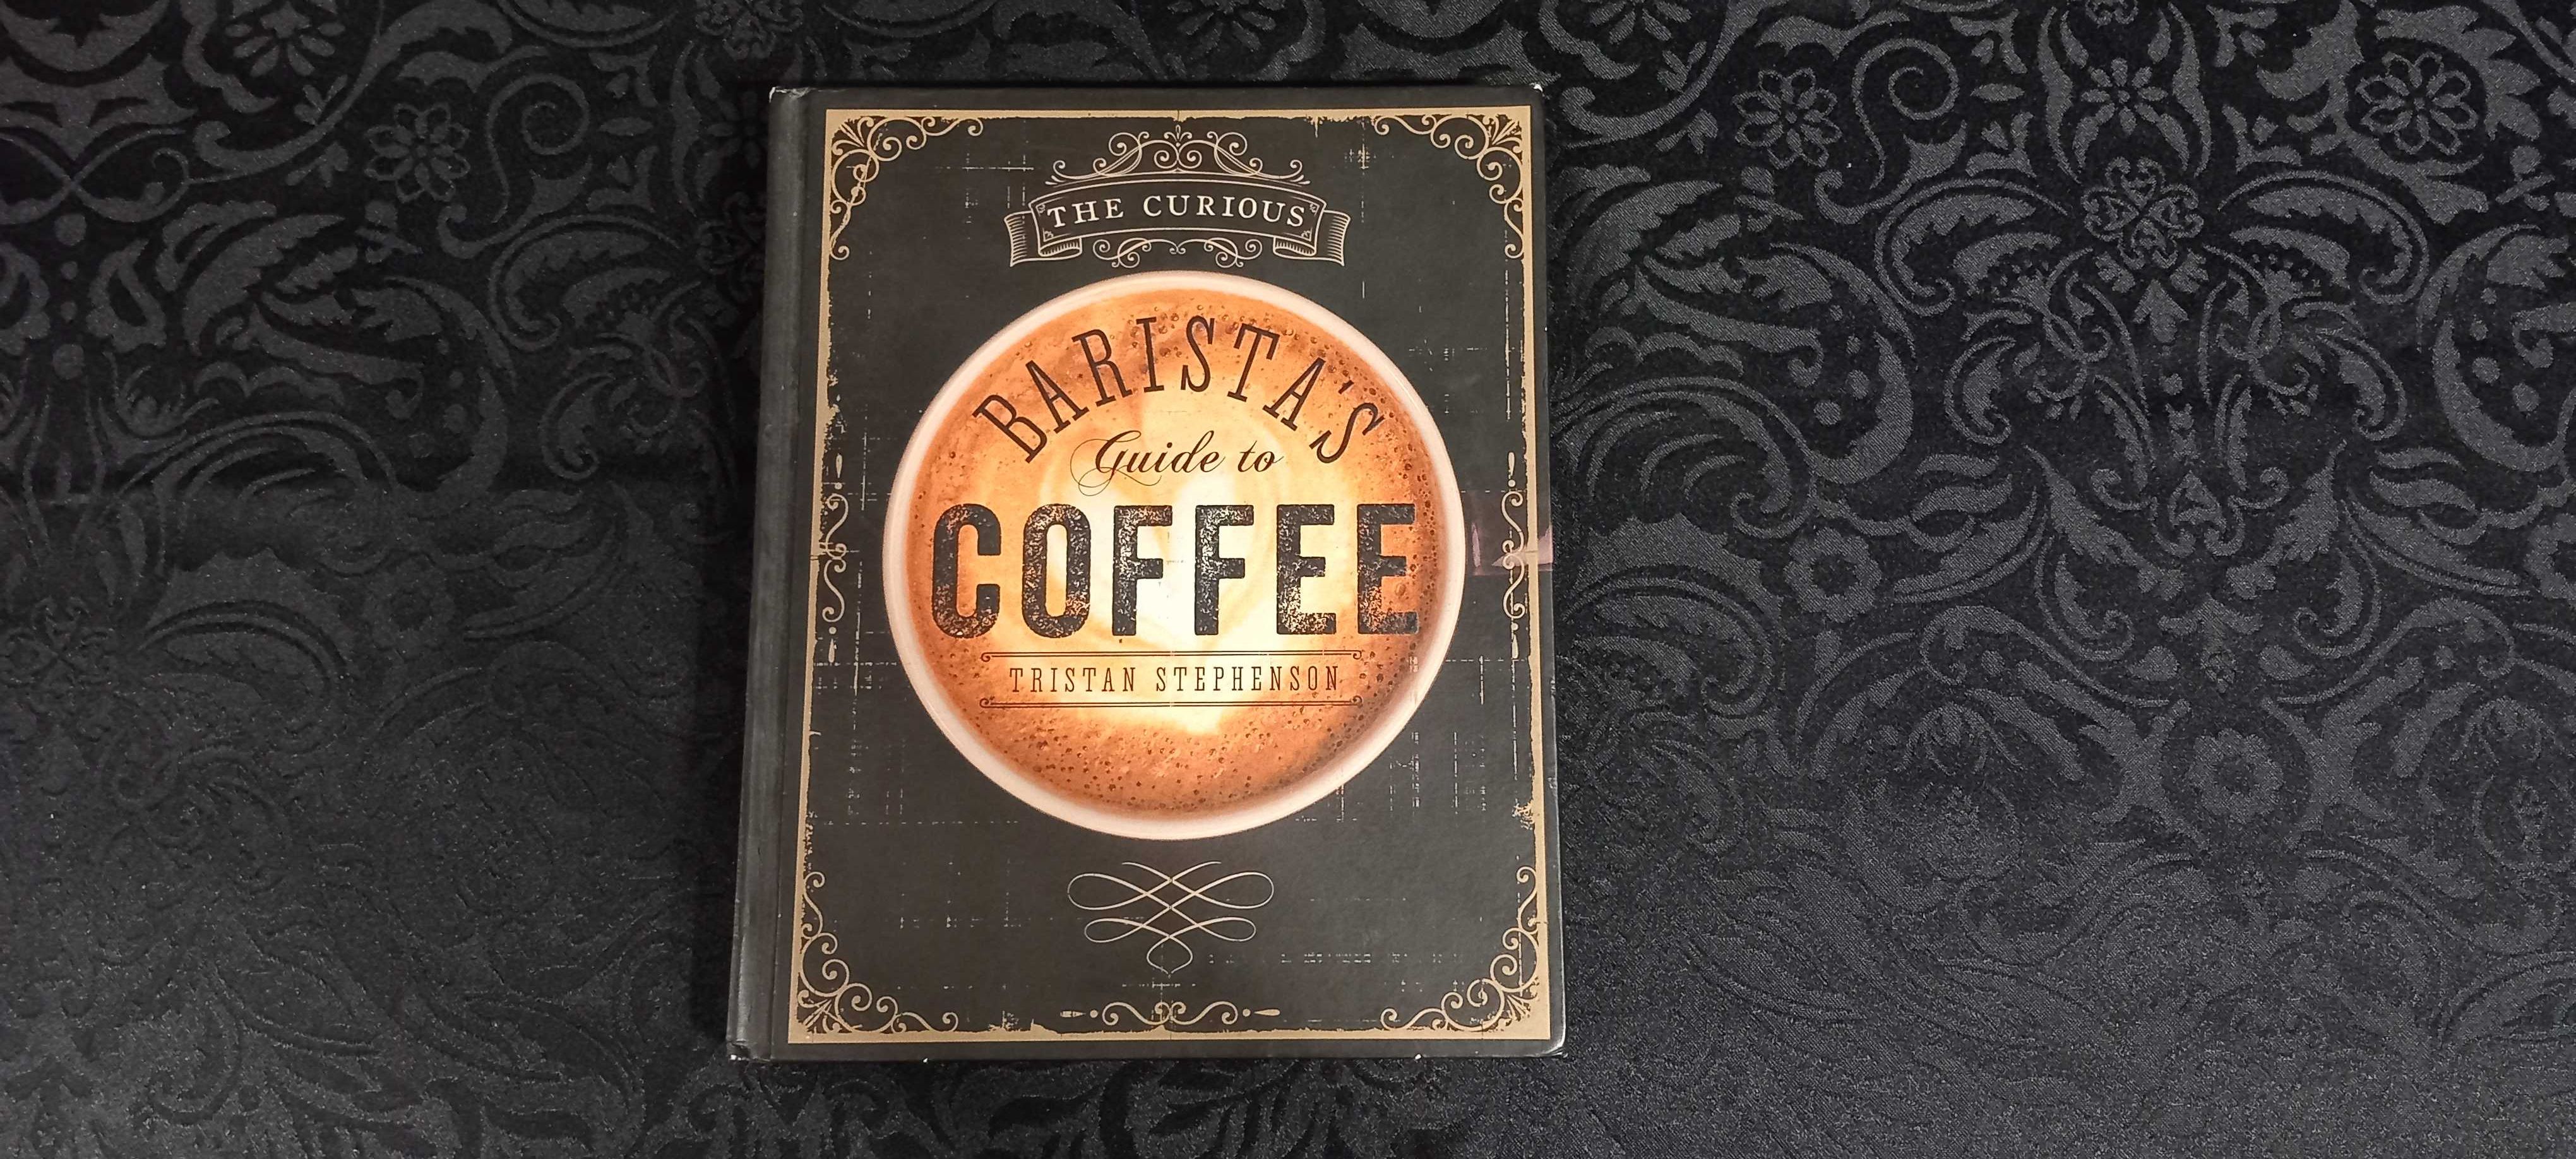 Café de Especialidade - Barista's Guide to Coffee